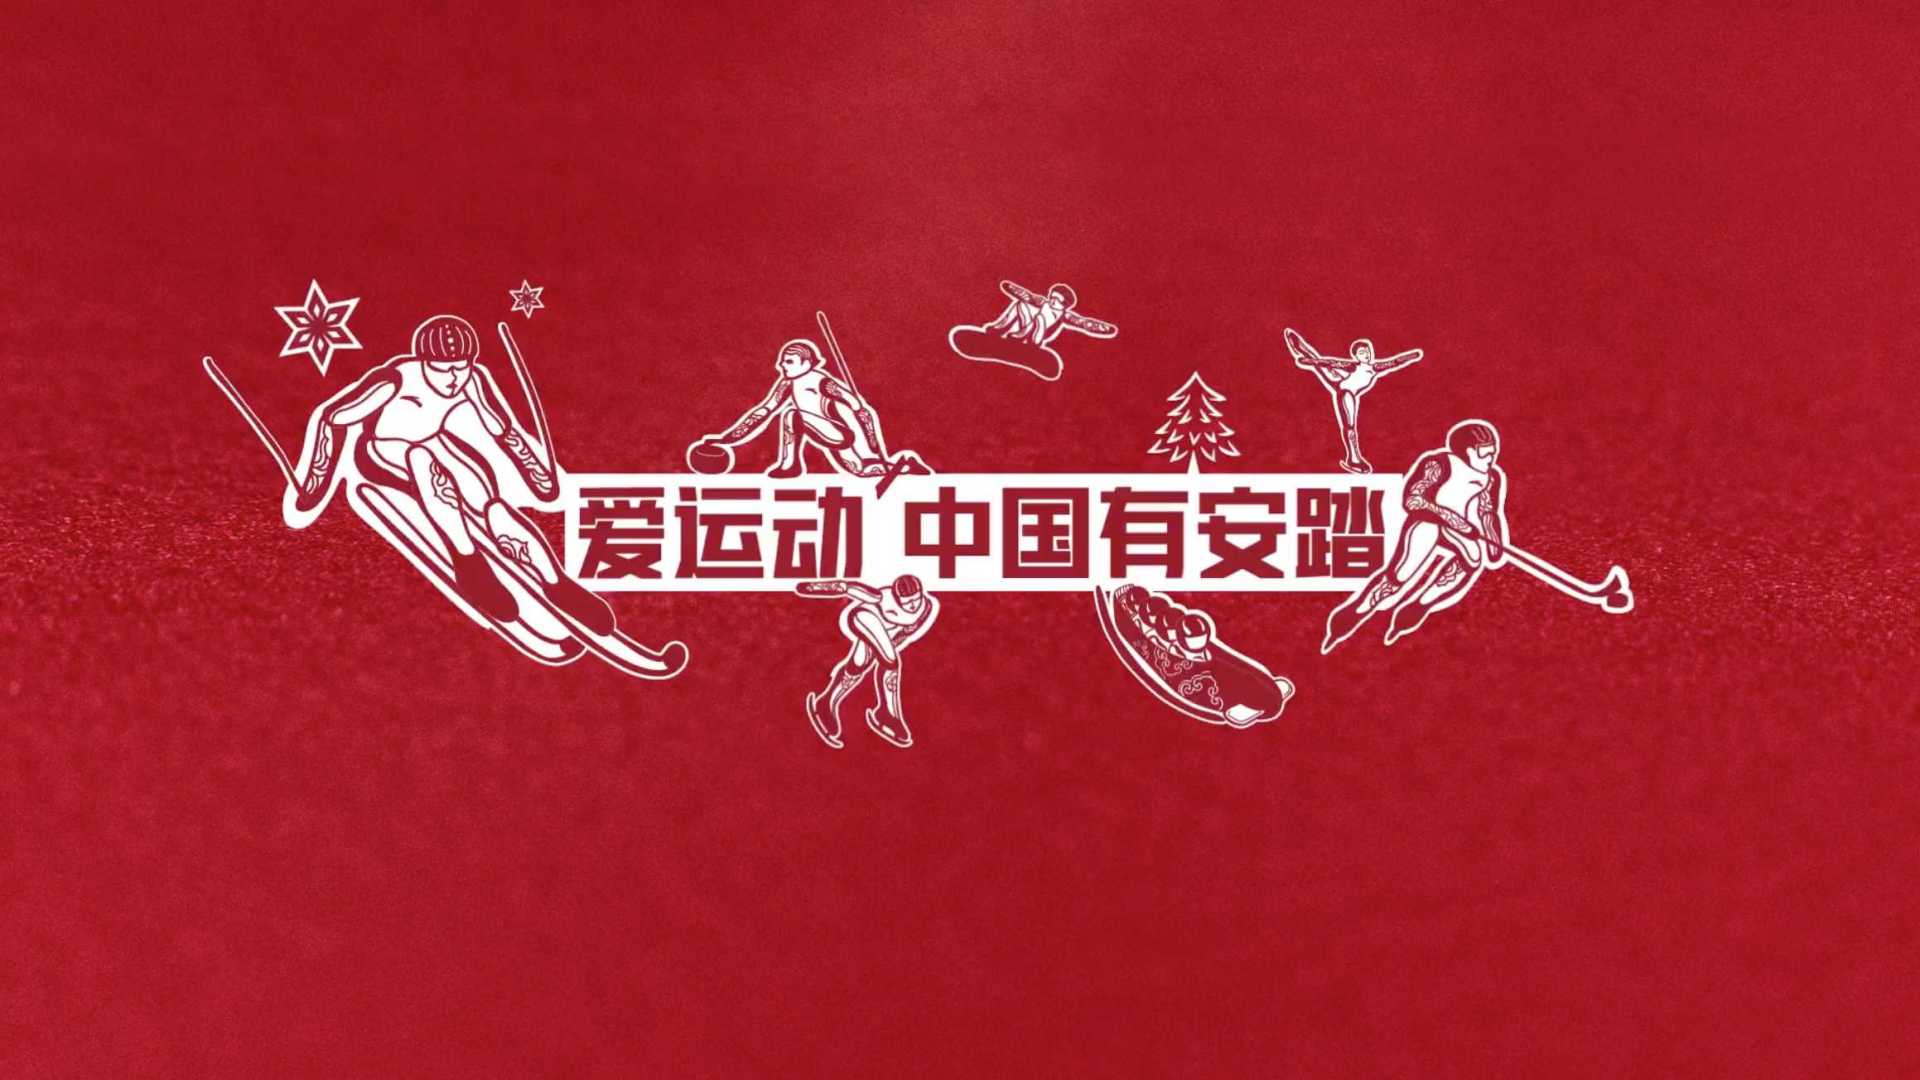 安踏春节剪纸合作项目 case video 陈粉丸